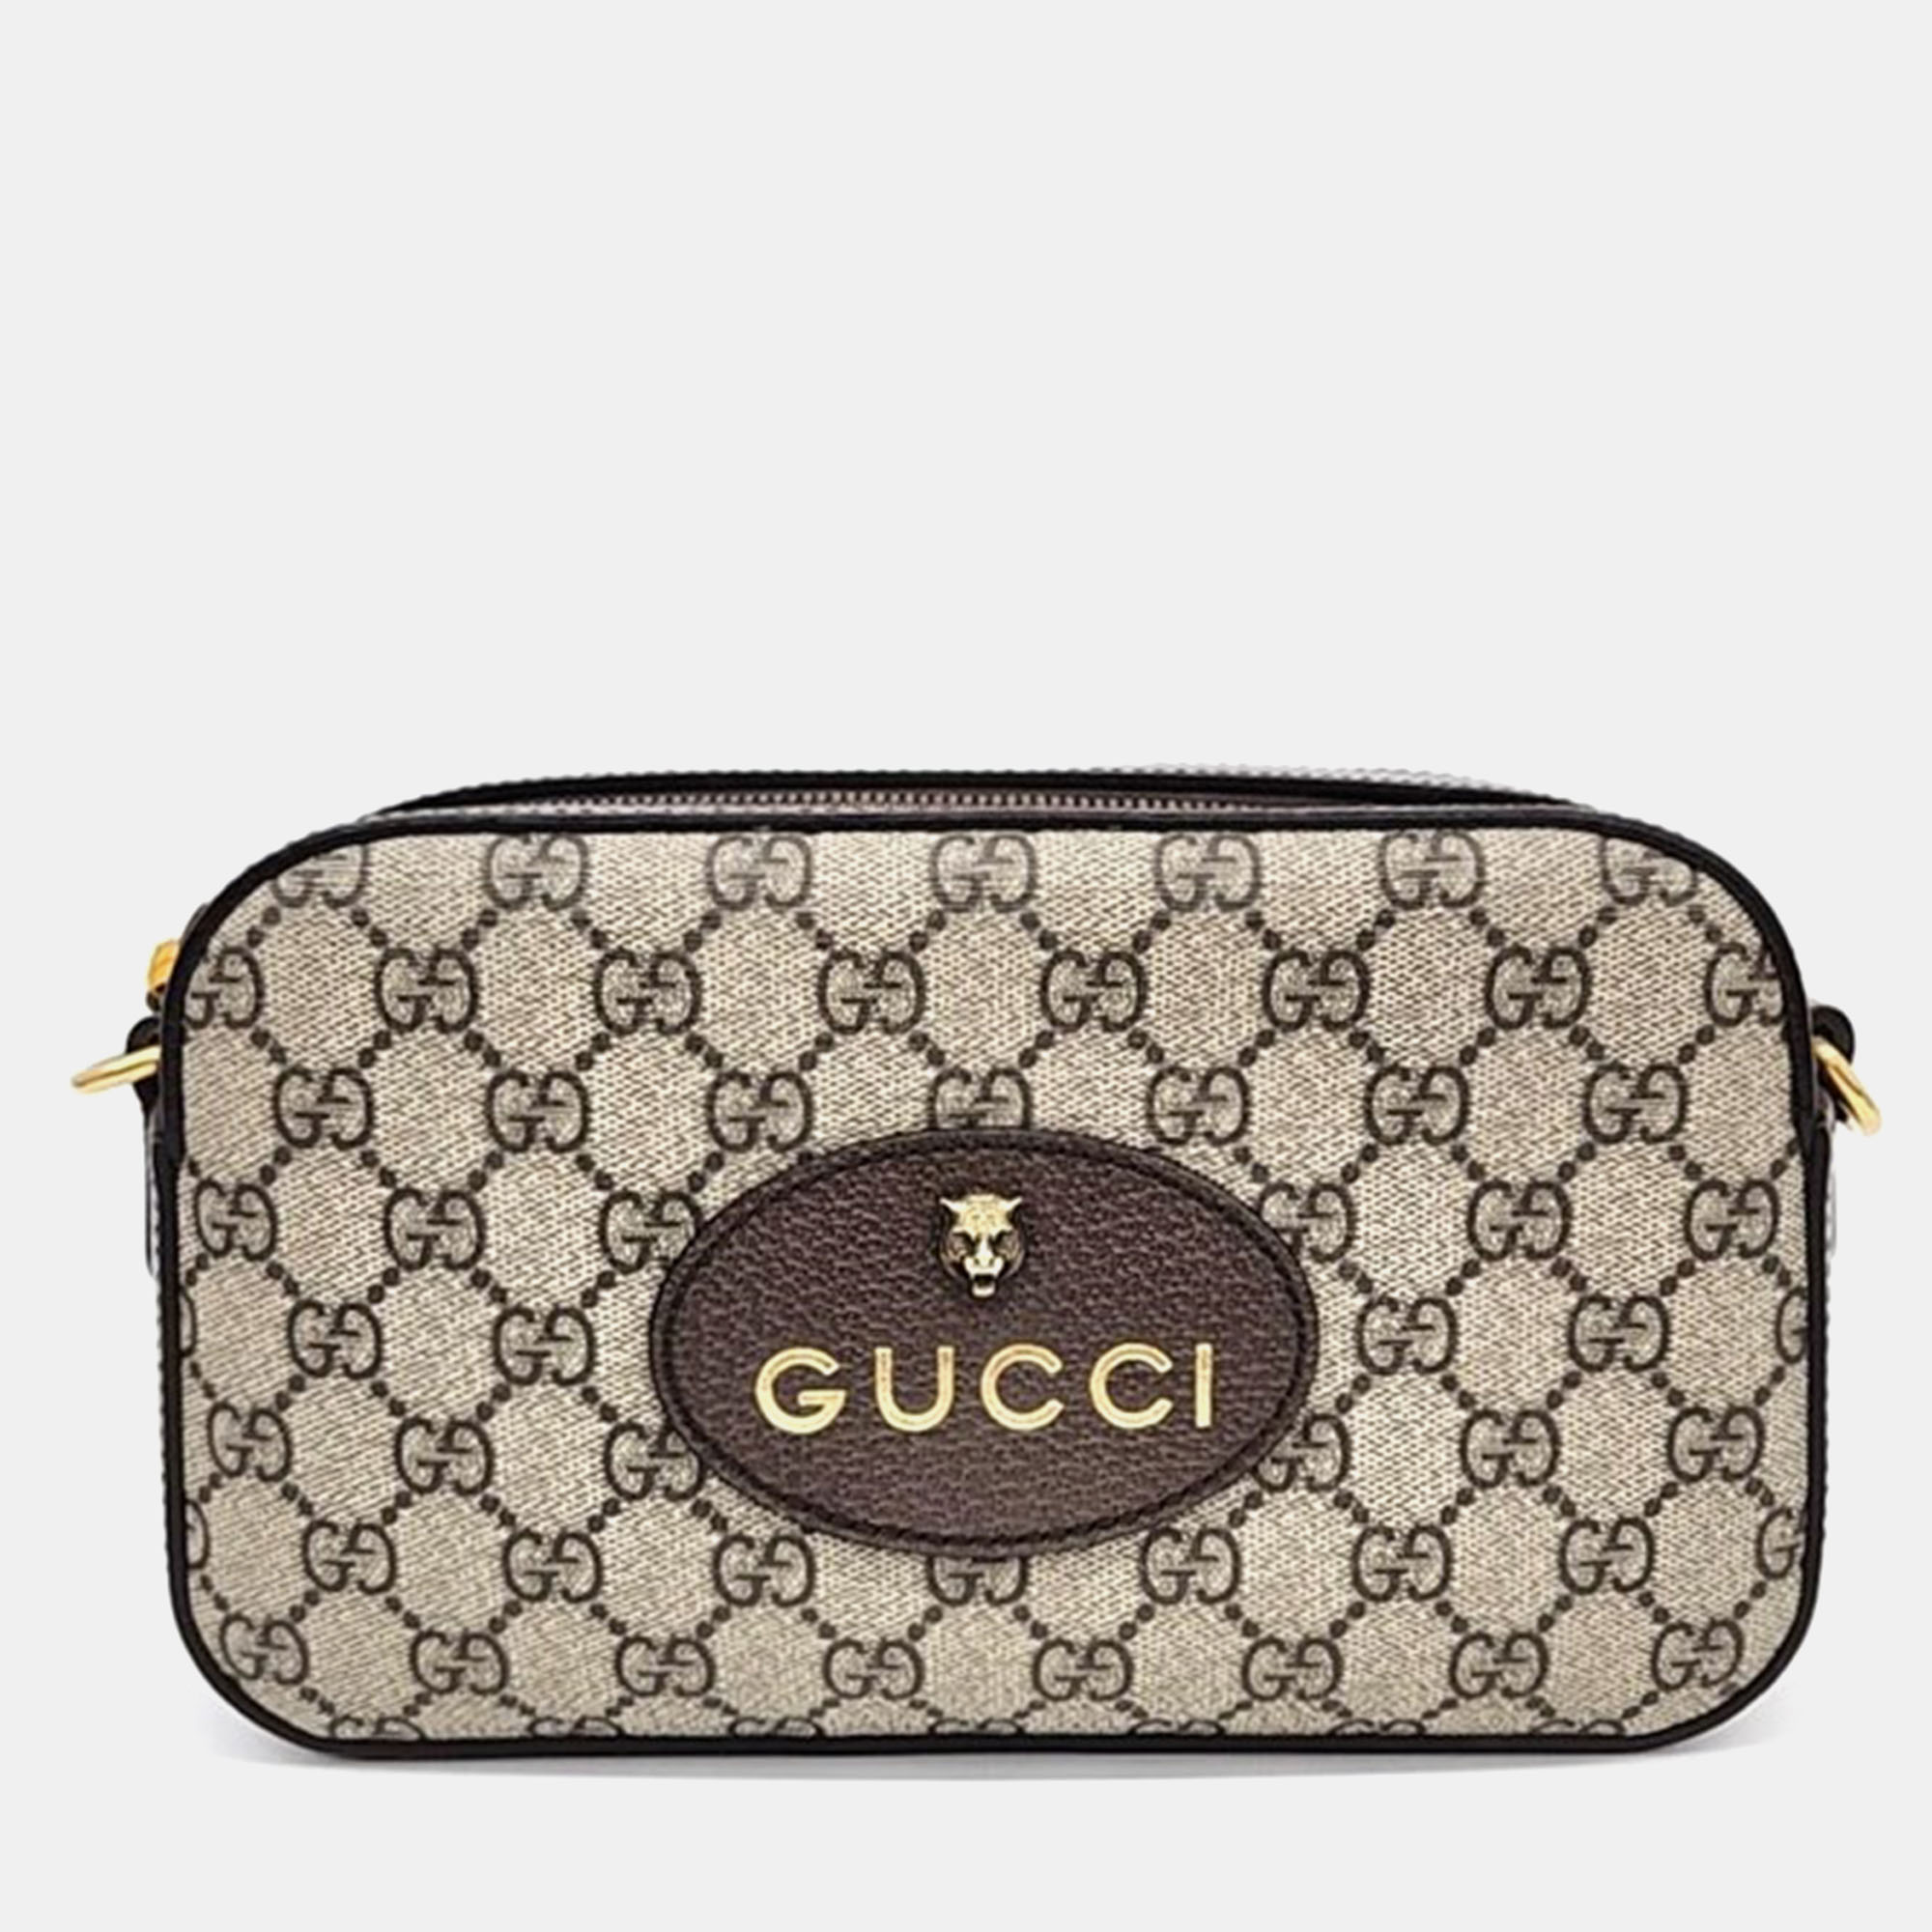 Gucci gg supreme messenger bag